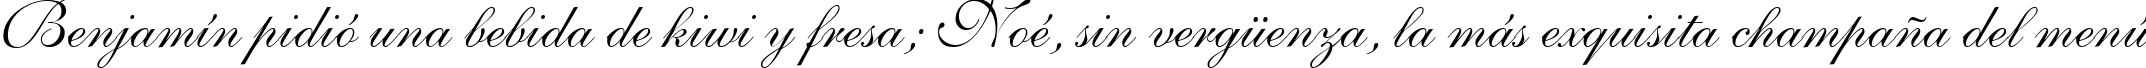 Пример написания шрифтом Allegretto Script Two текста на испанском